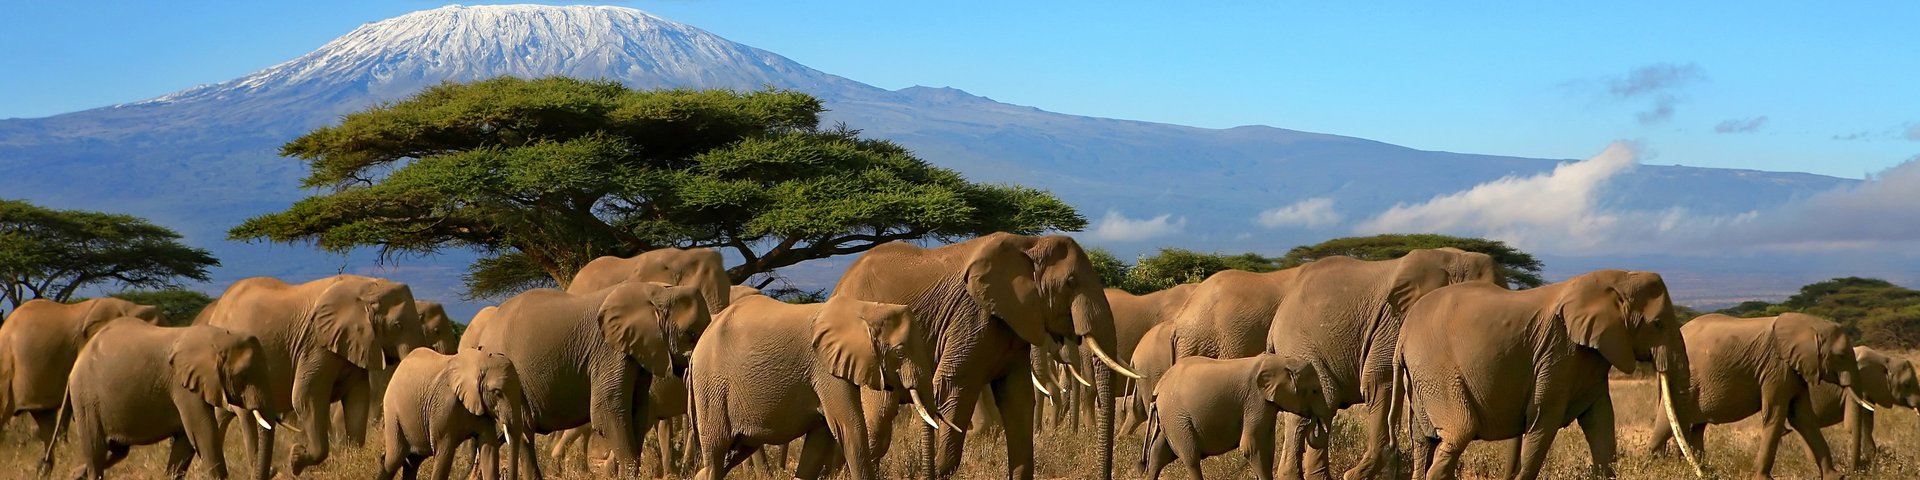 Eine Herde Elefanten und im Hintergrund der mächtige Kilimanjaro